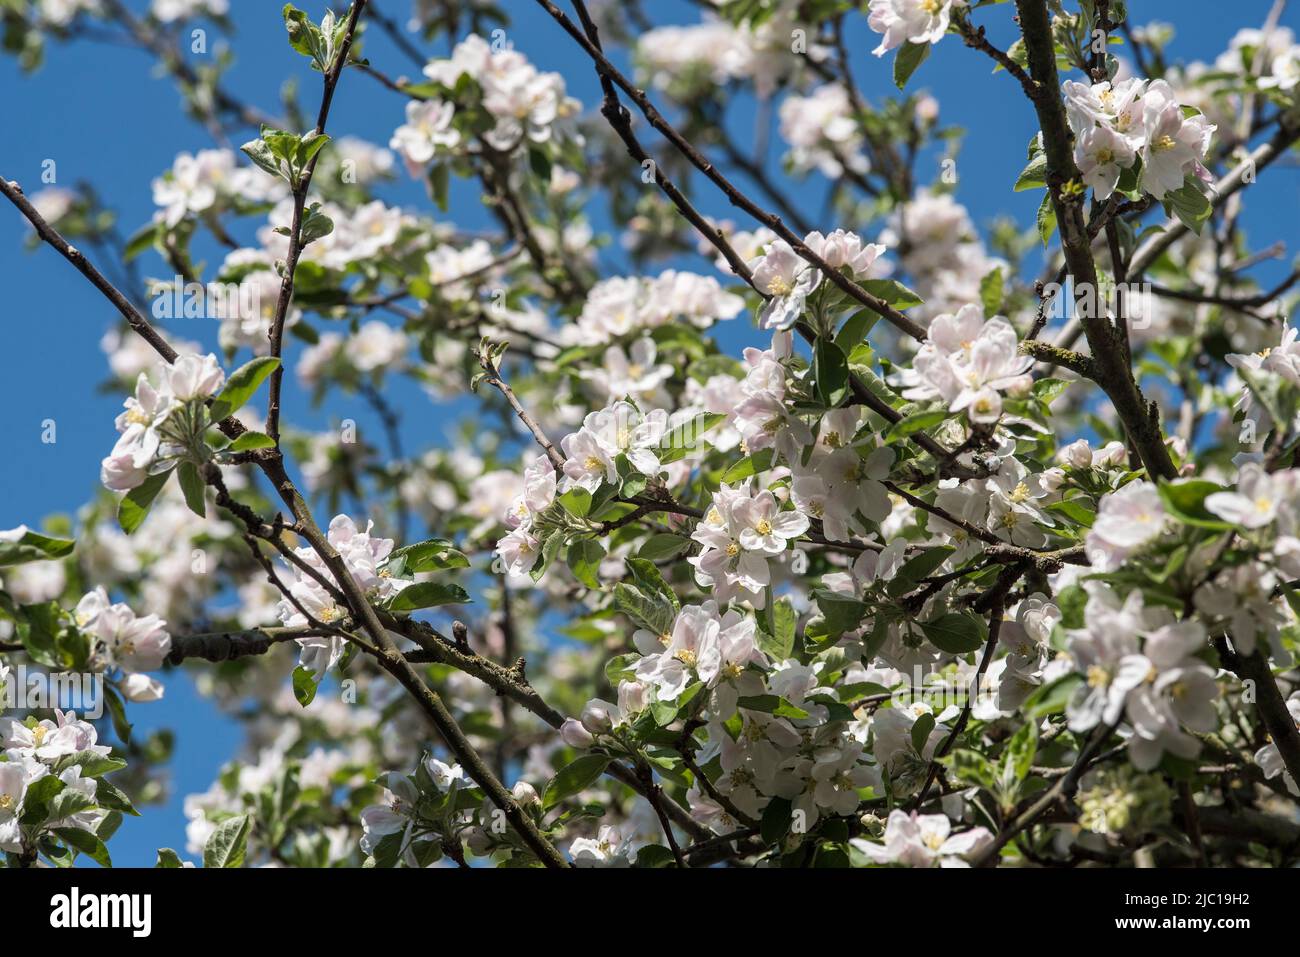 Flowers: Fresh white Apple blossom in Spring. Stock Photo